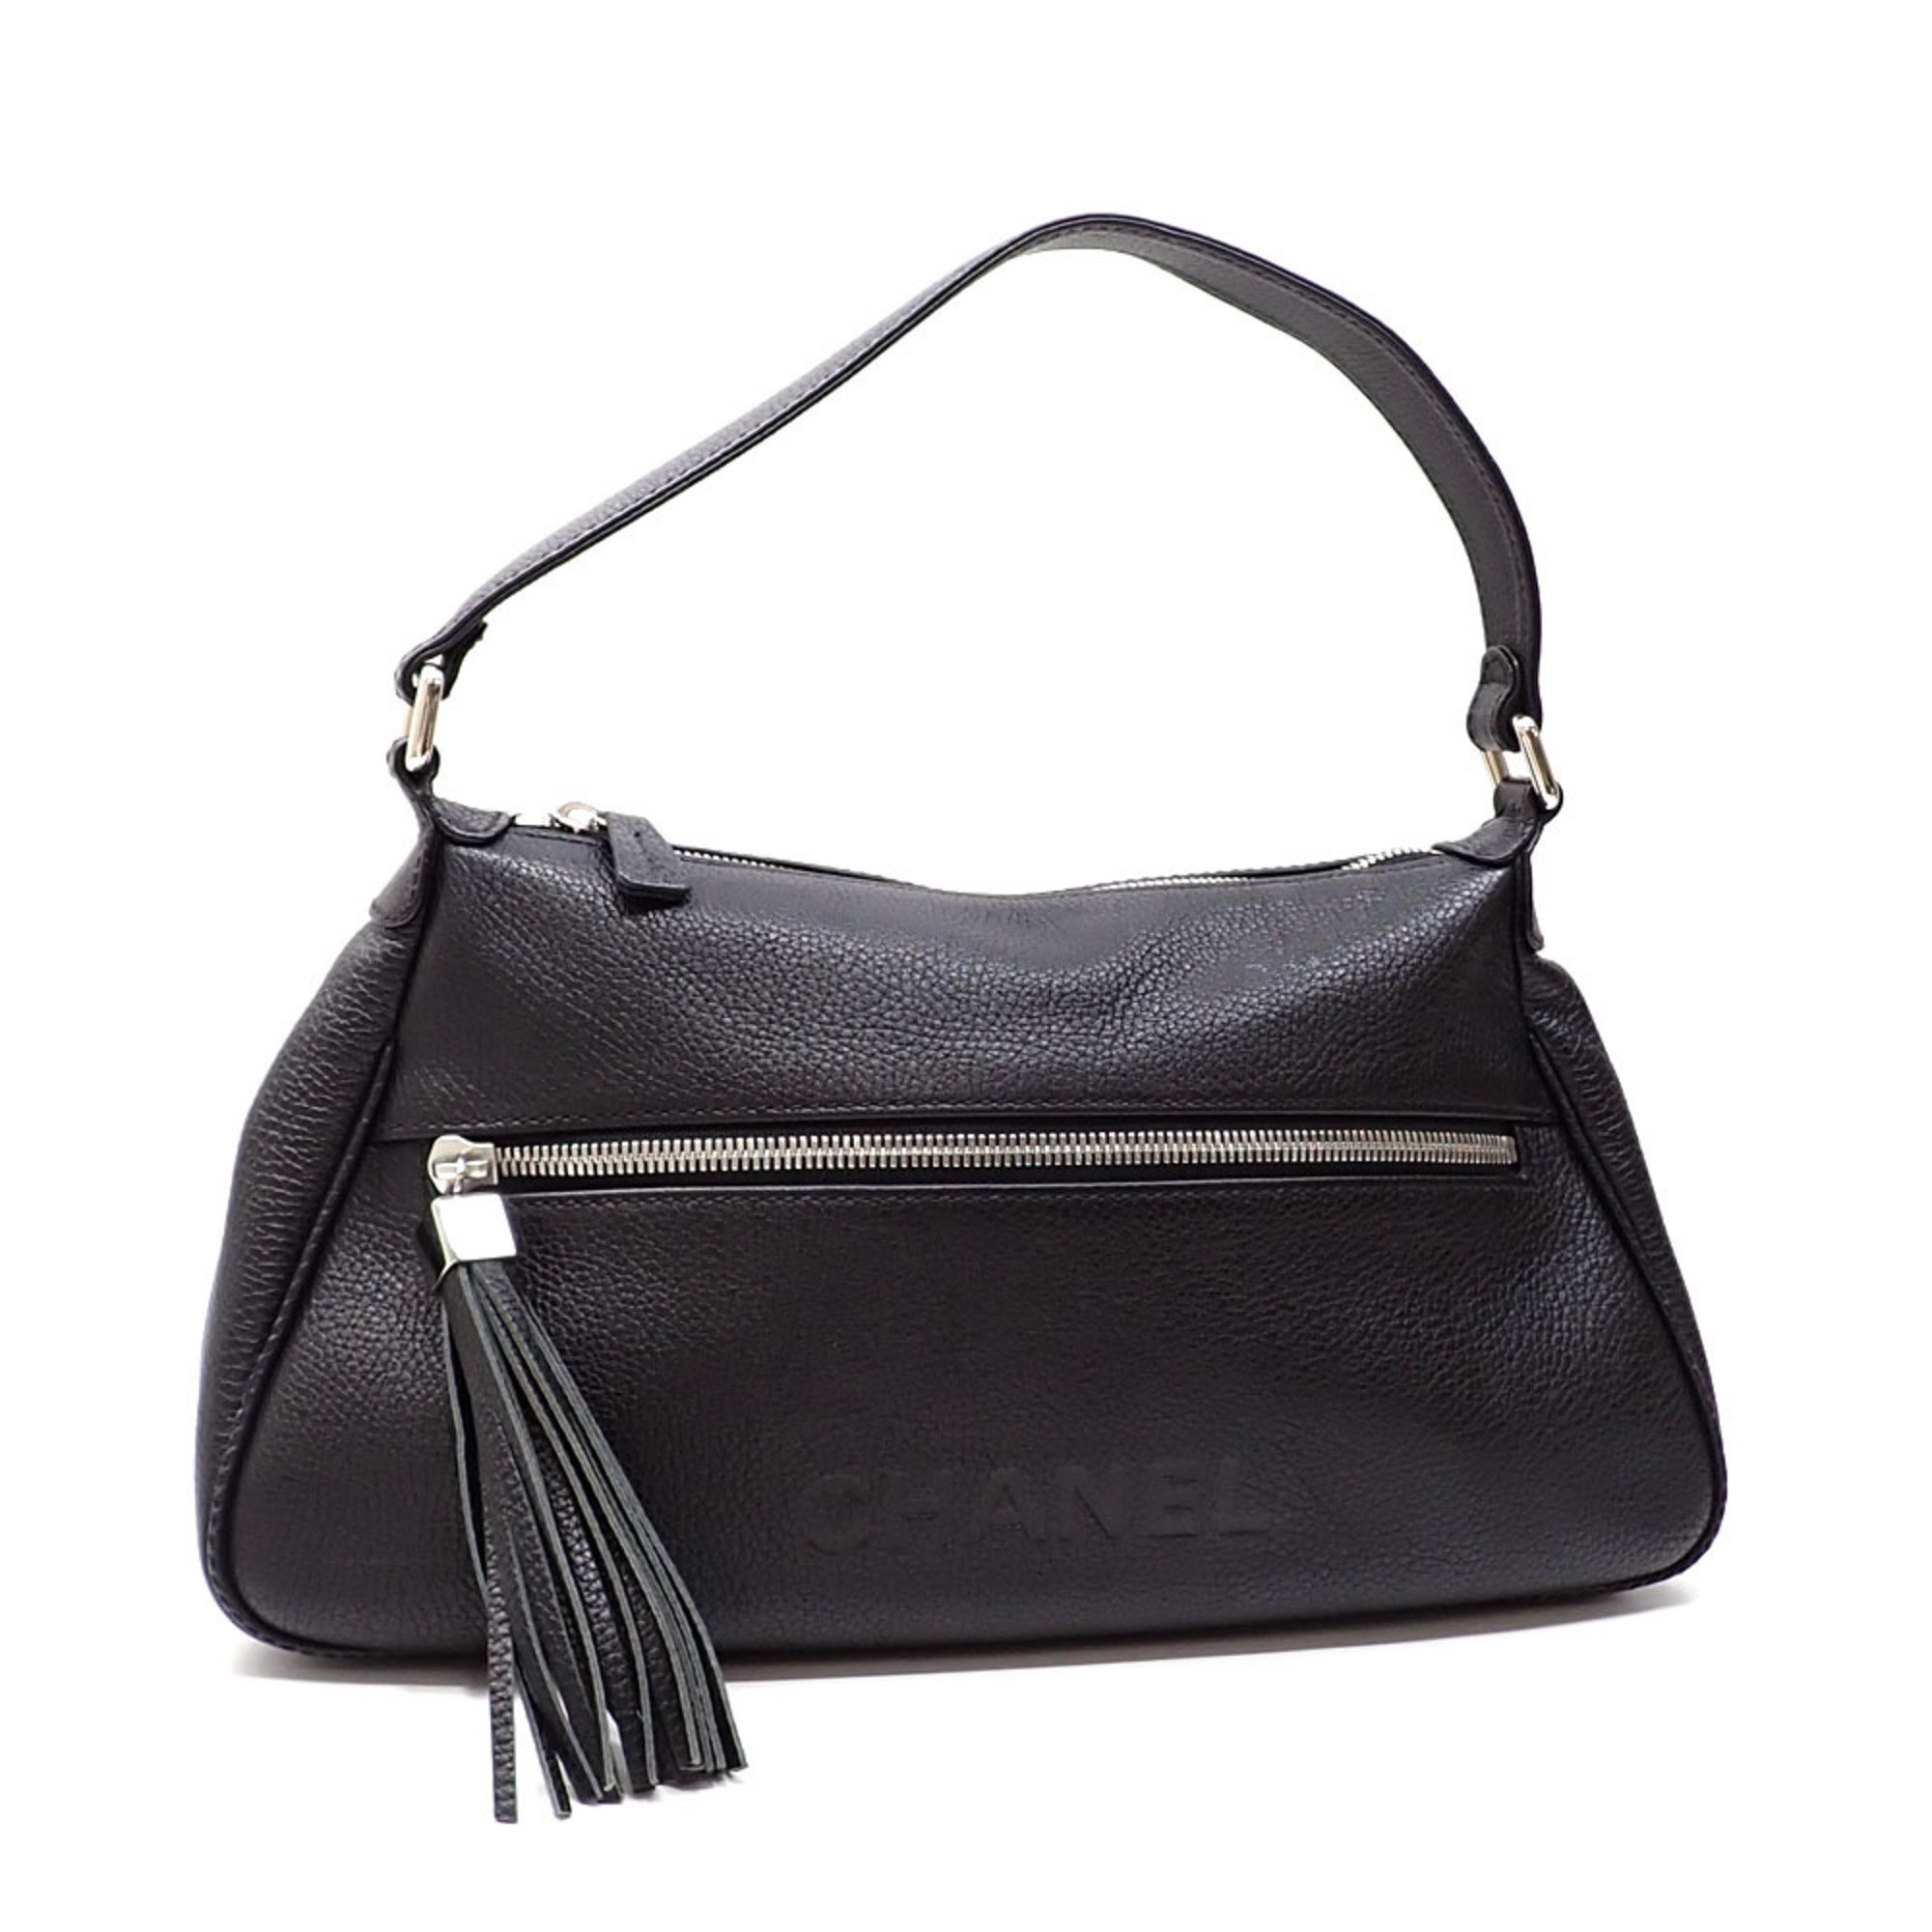 Chanel bag for women, black, caviar skin, tassel